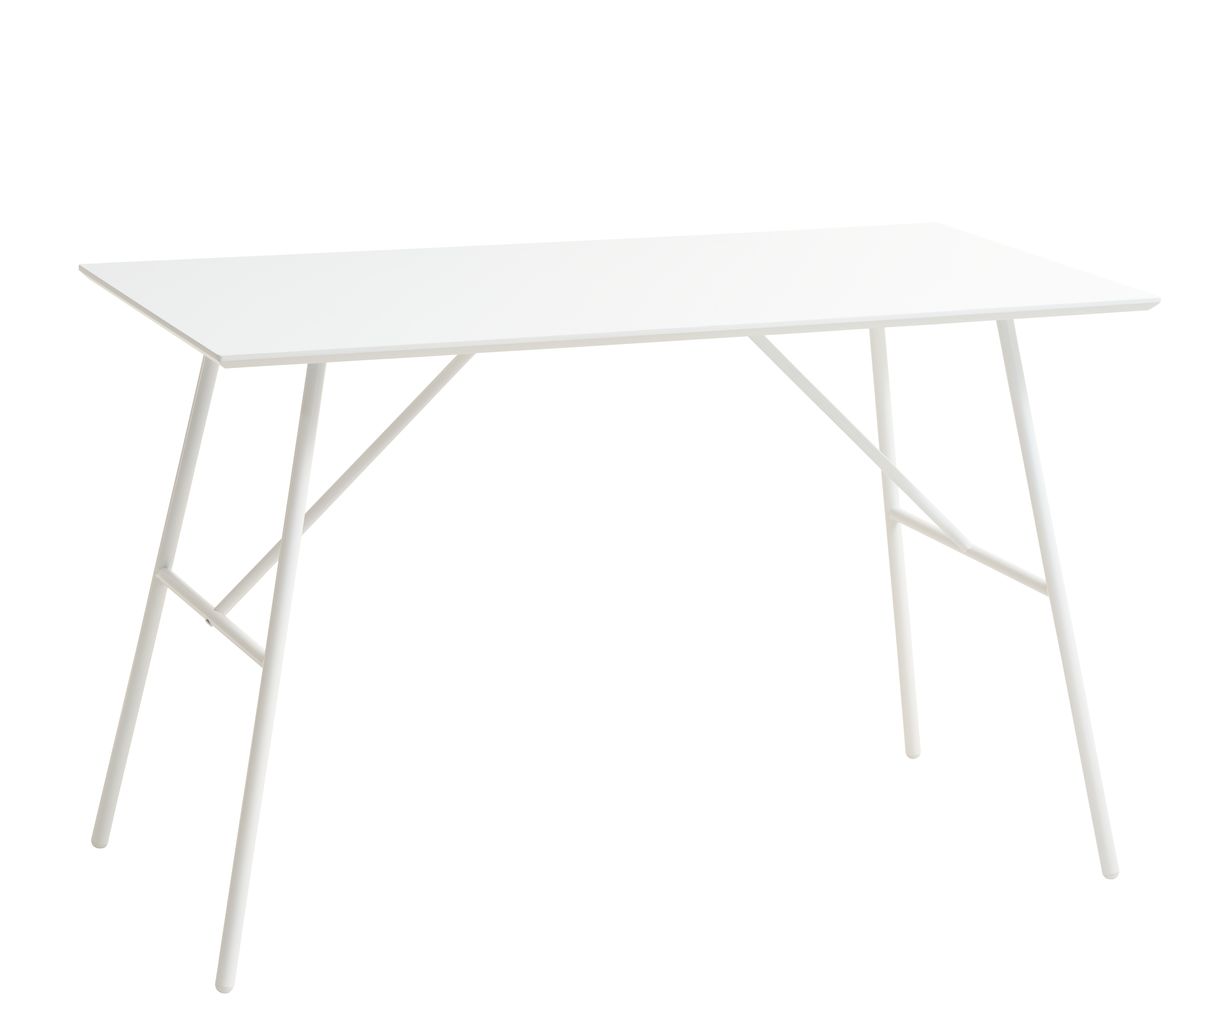 Työpöytä BRYNDRUP 60x120 valkoinen | JYSK